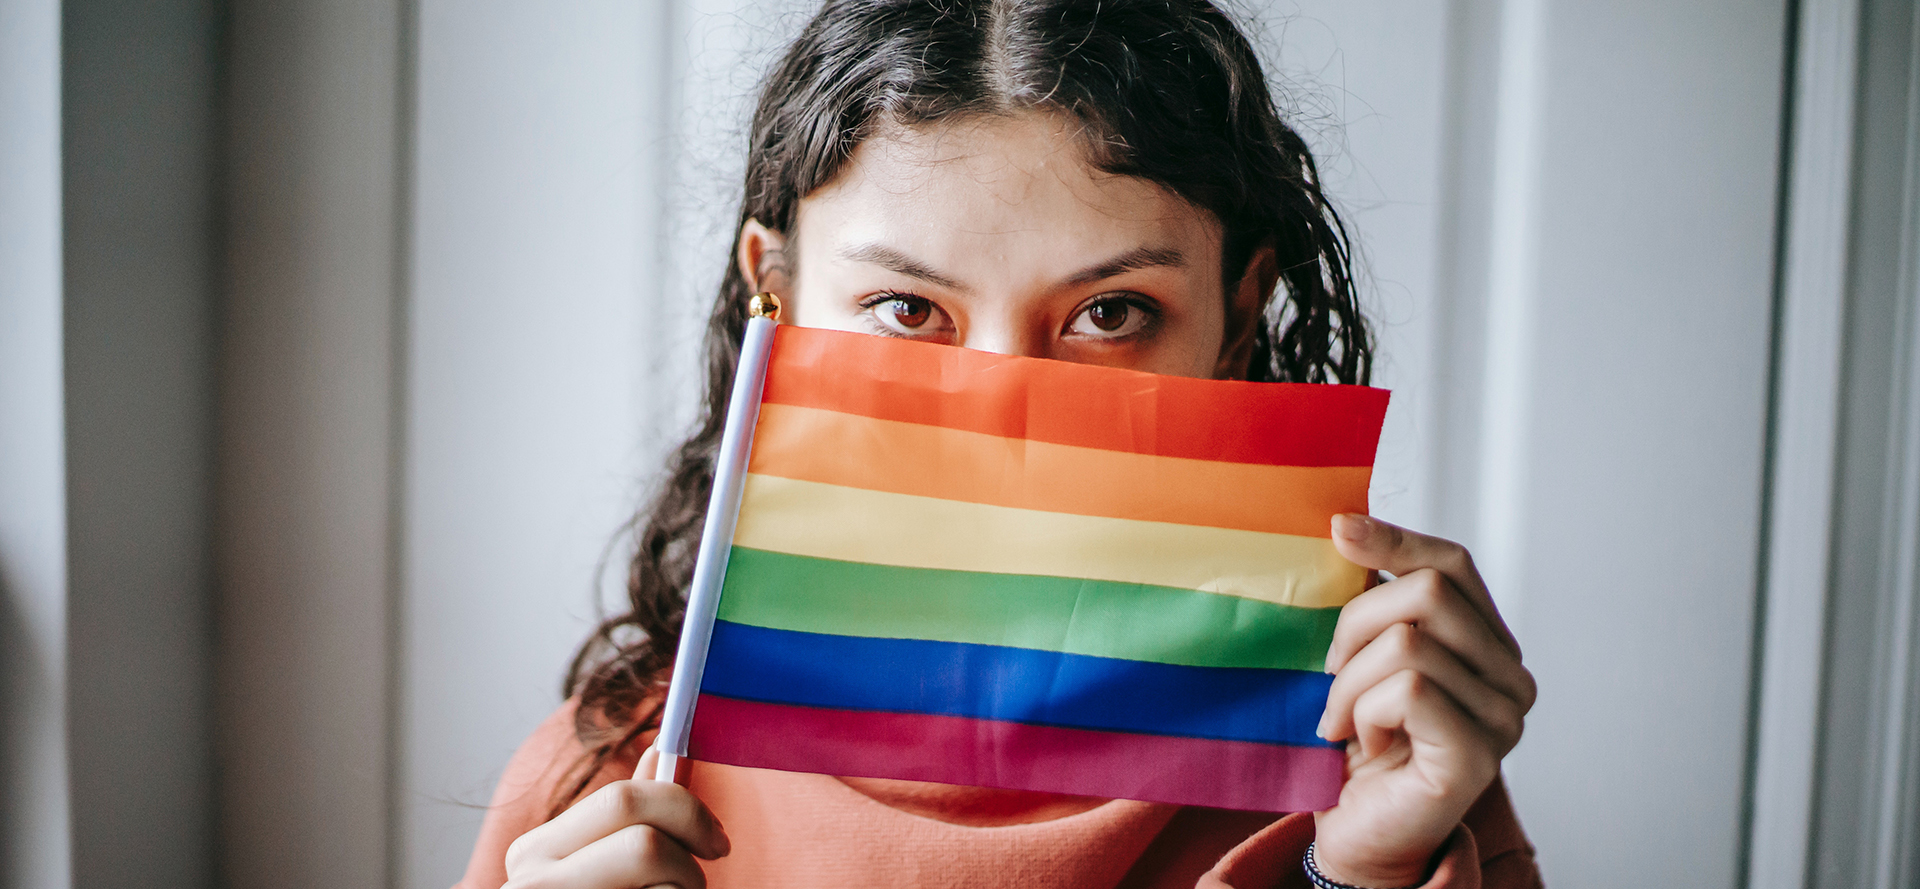 Una chica bisexual se cubre la cara con la bandera LGBT.